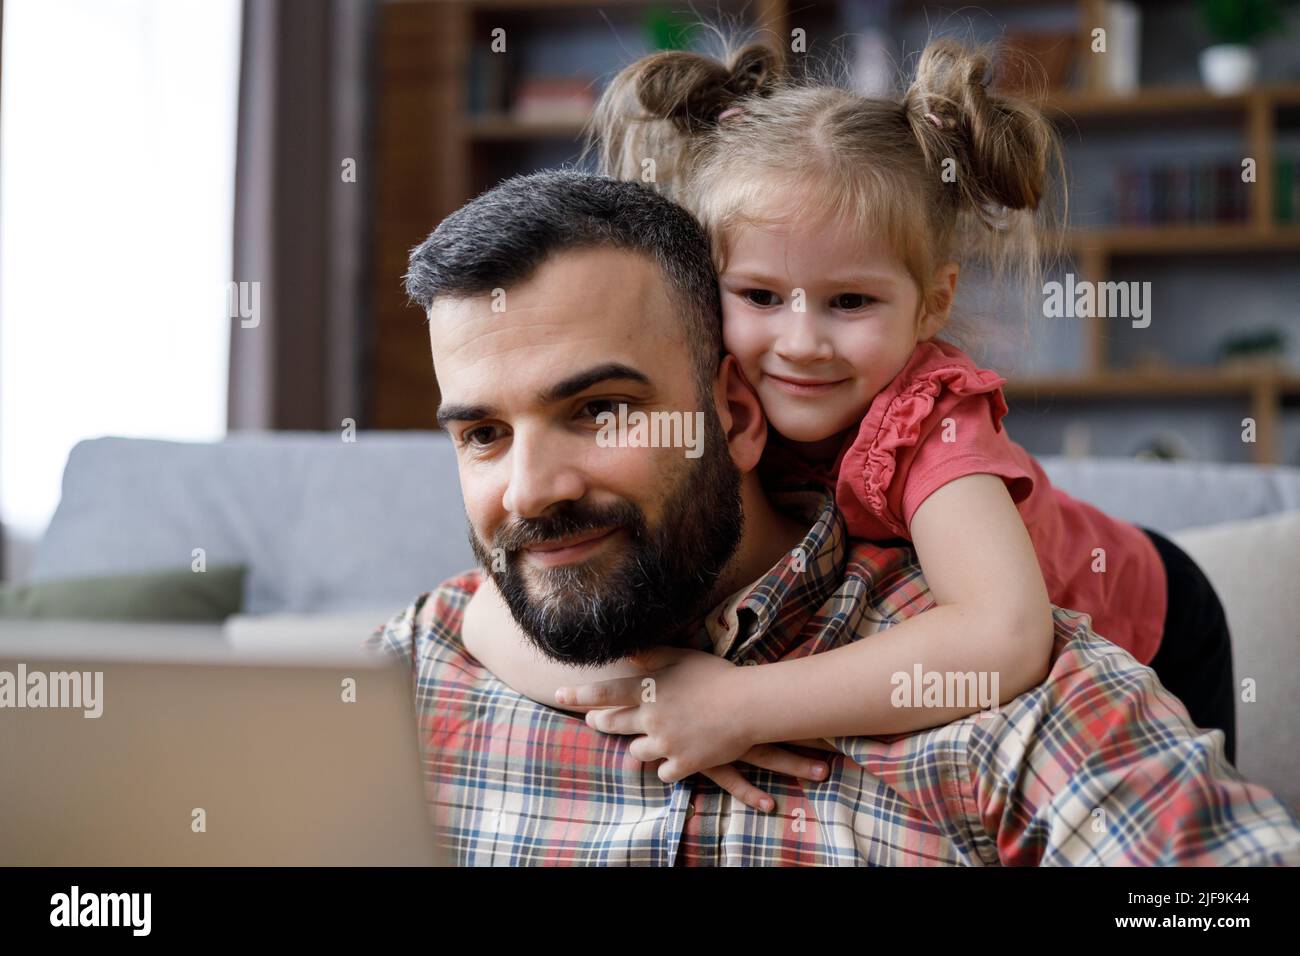 Glückliches Familienportrait. Der junge, gutaussehende Mann arbeitet von zu Hause aus am Laptop, konzentriert die Aufmerksamkeit auf den Laptop-Bildschirm, während seine kleine Tochter ihre Geliebte umarmt Stockfoto